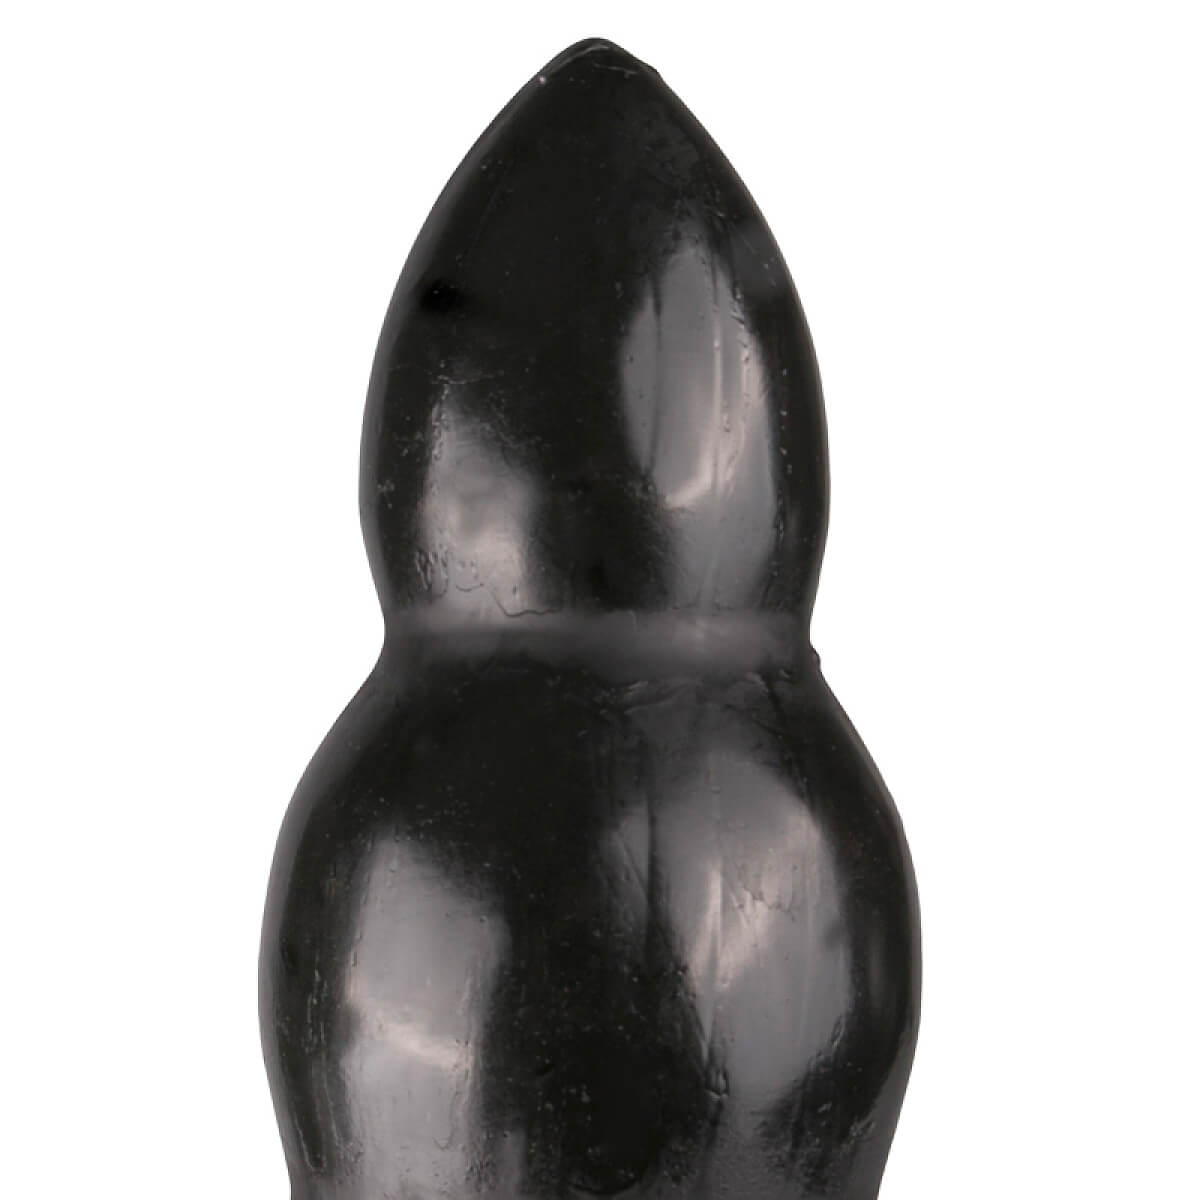 All Black Dildo 23 cm, masivní baculatý kolík s průměrem 8 cm